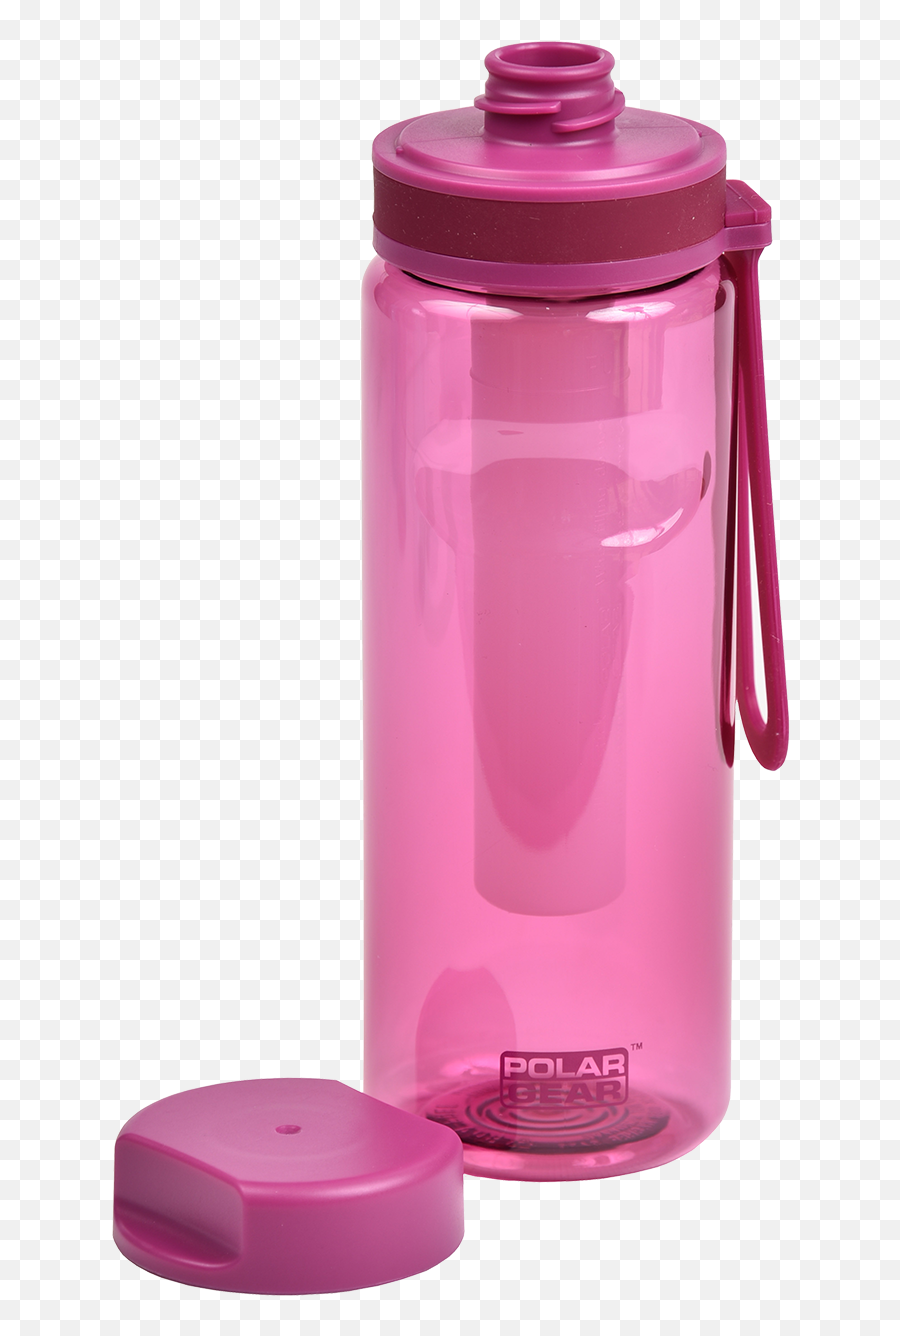 Polar Gear Aqua Cool Tritan Bottle - Lid Emoji,Cool Gear Emoji Water Bottle